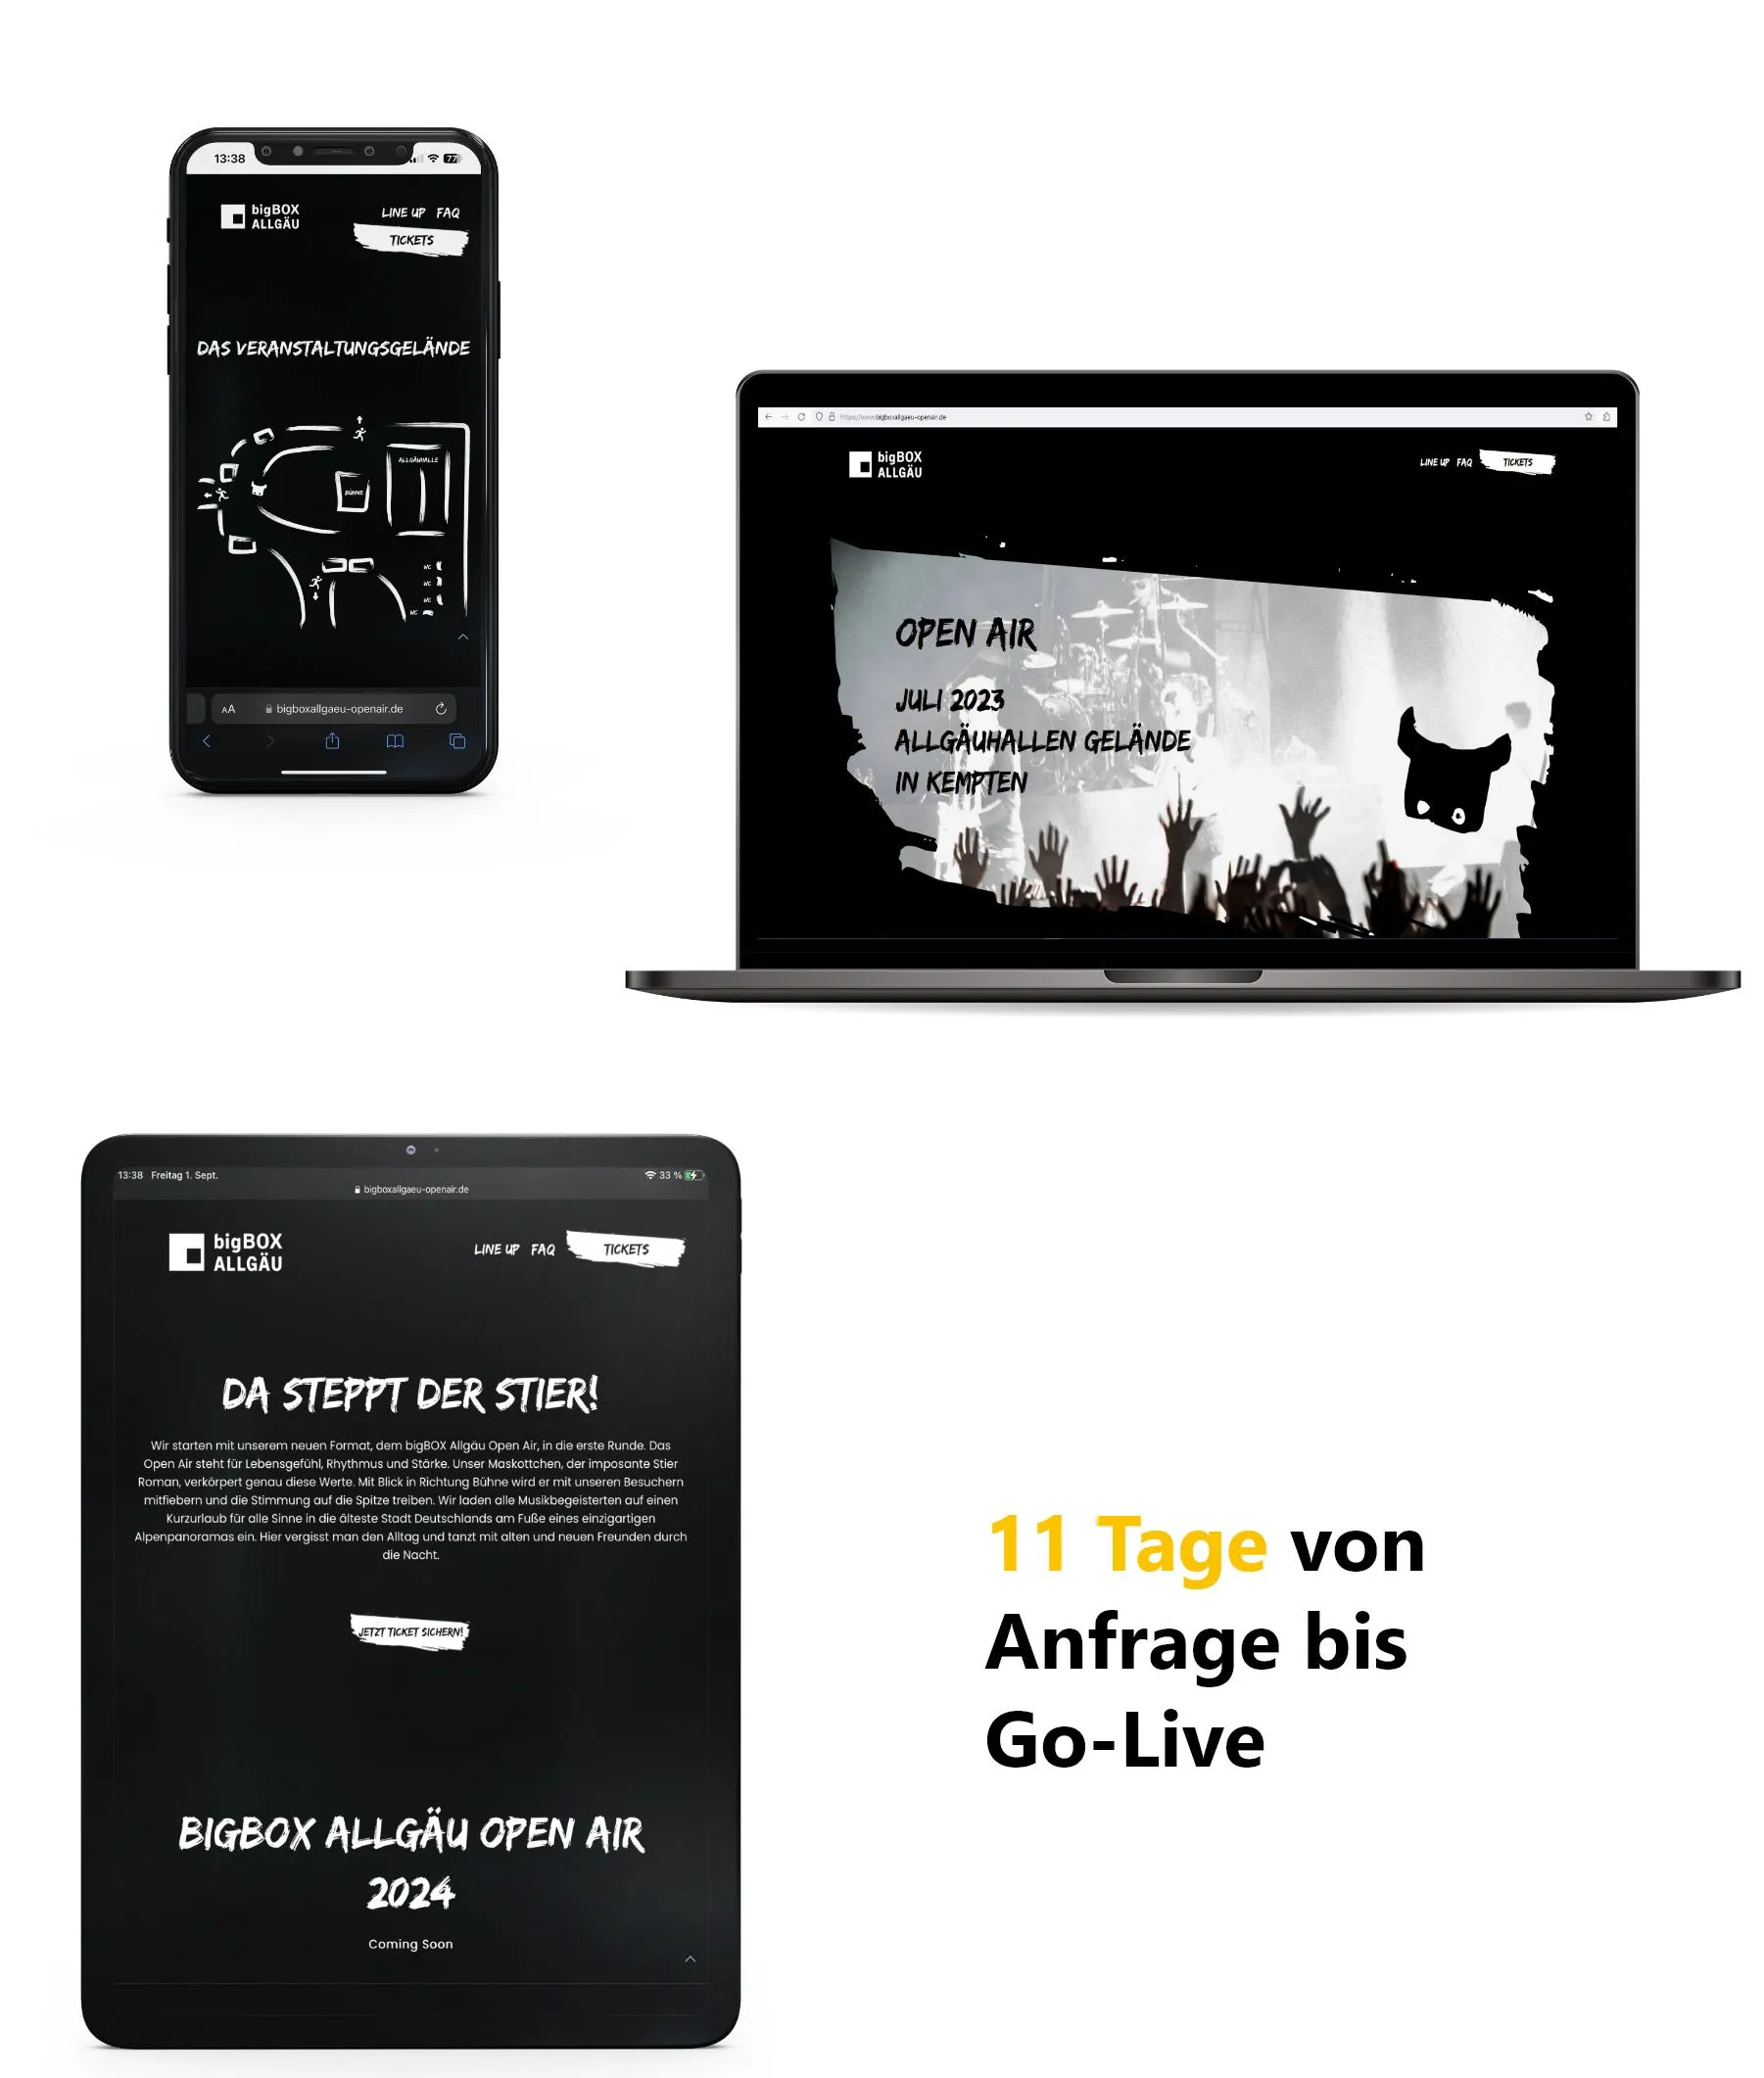 Responsives Webdesign für die Website des bigBOX Allgäu Openairs - in nur 11 Tagen umgesetzt durch die Werbeagentur greiterundcie.